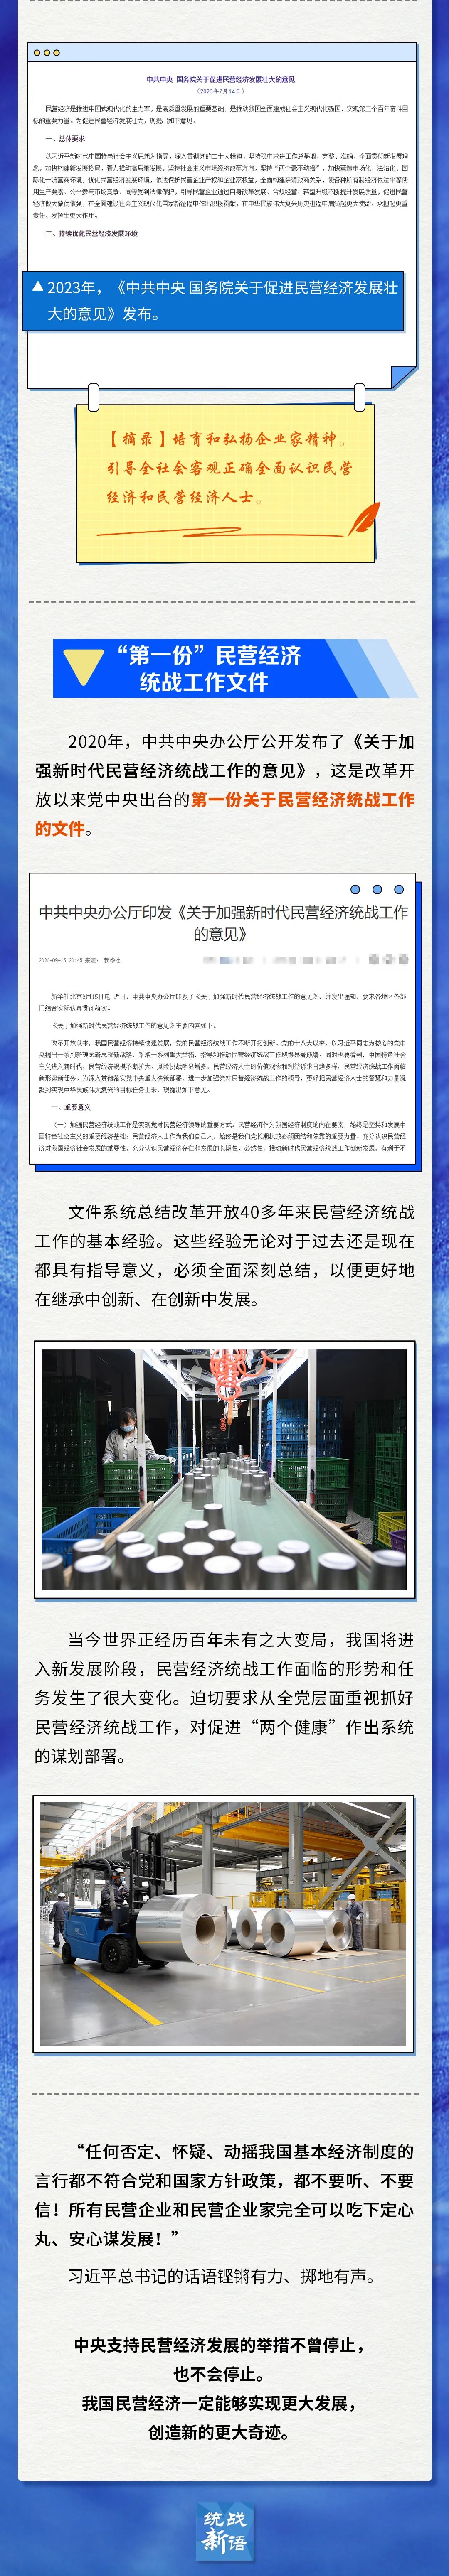 惠企新政速递 | 支持民营经济发展，中央出过哪些大招？